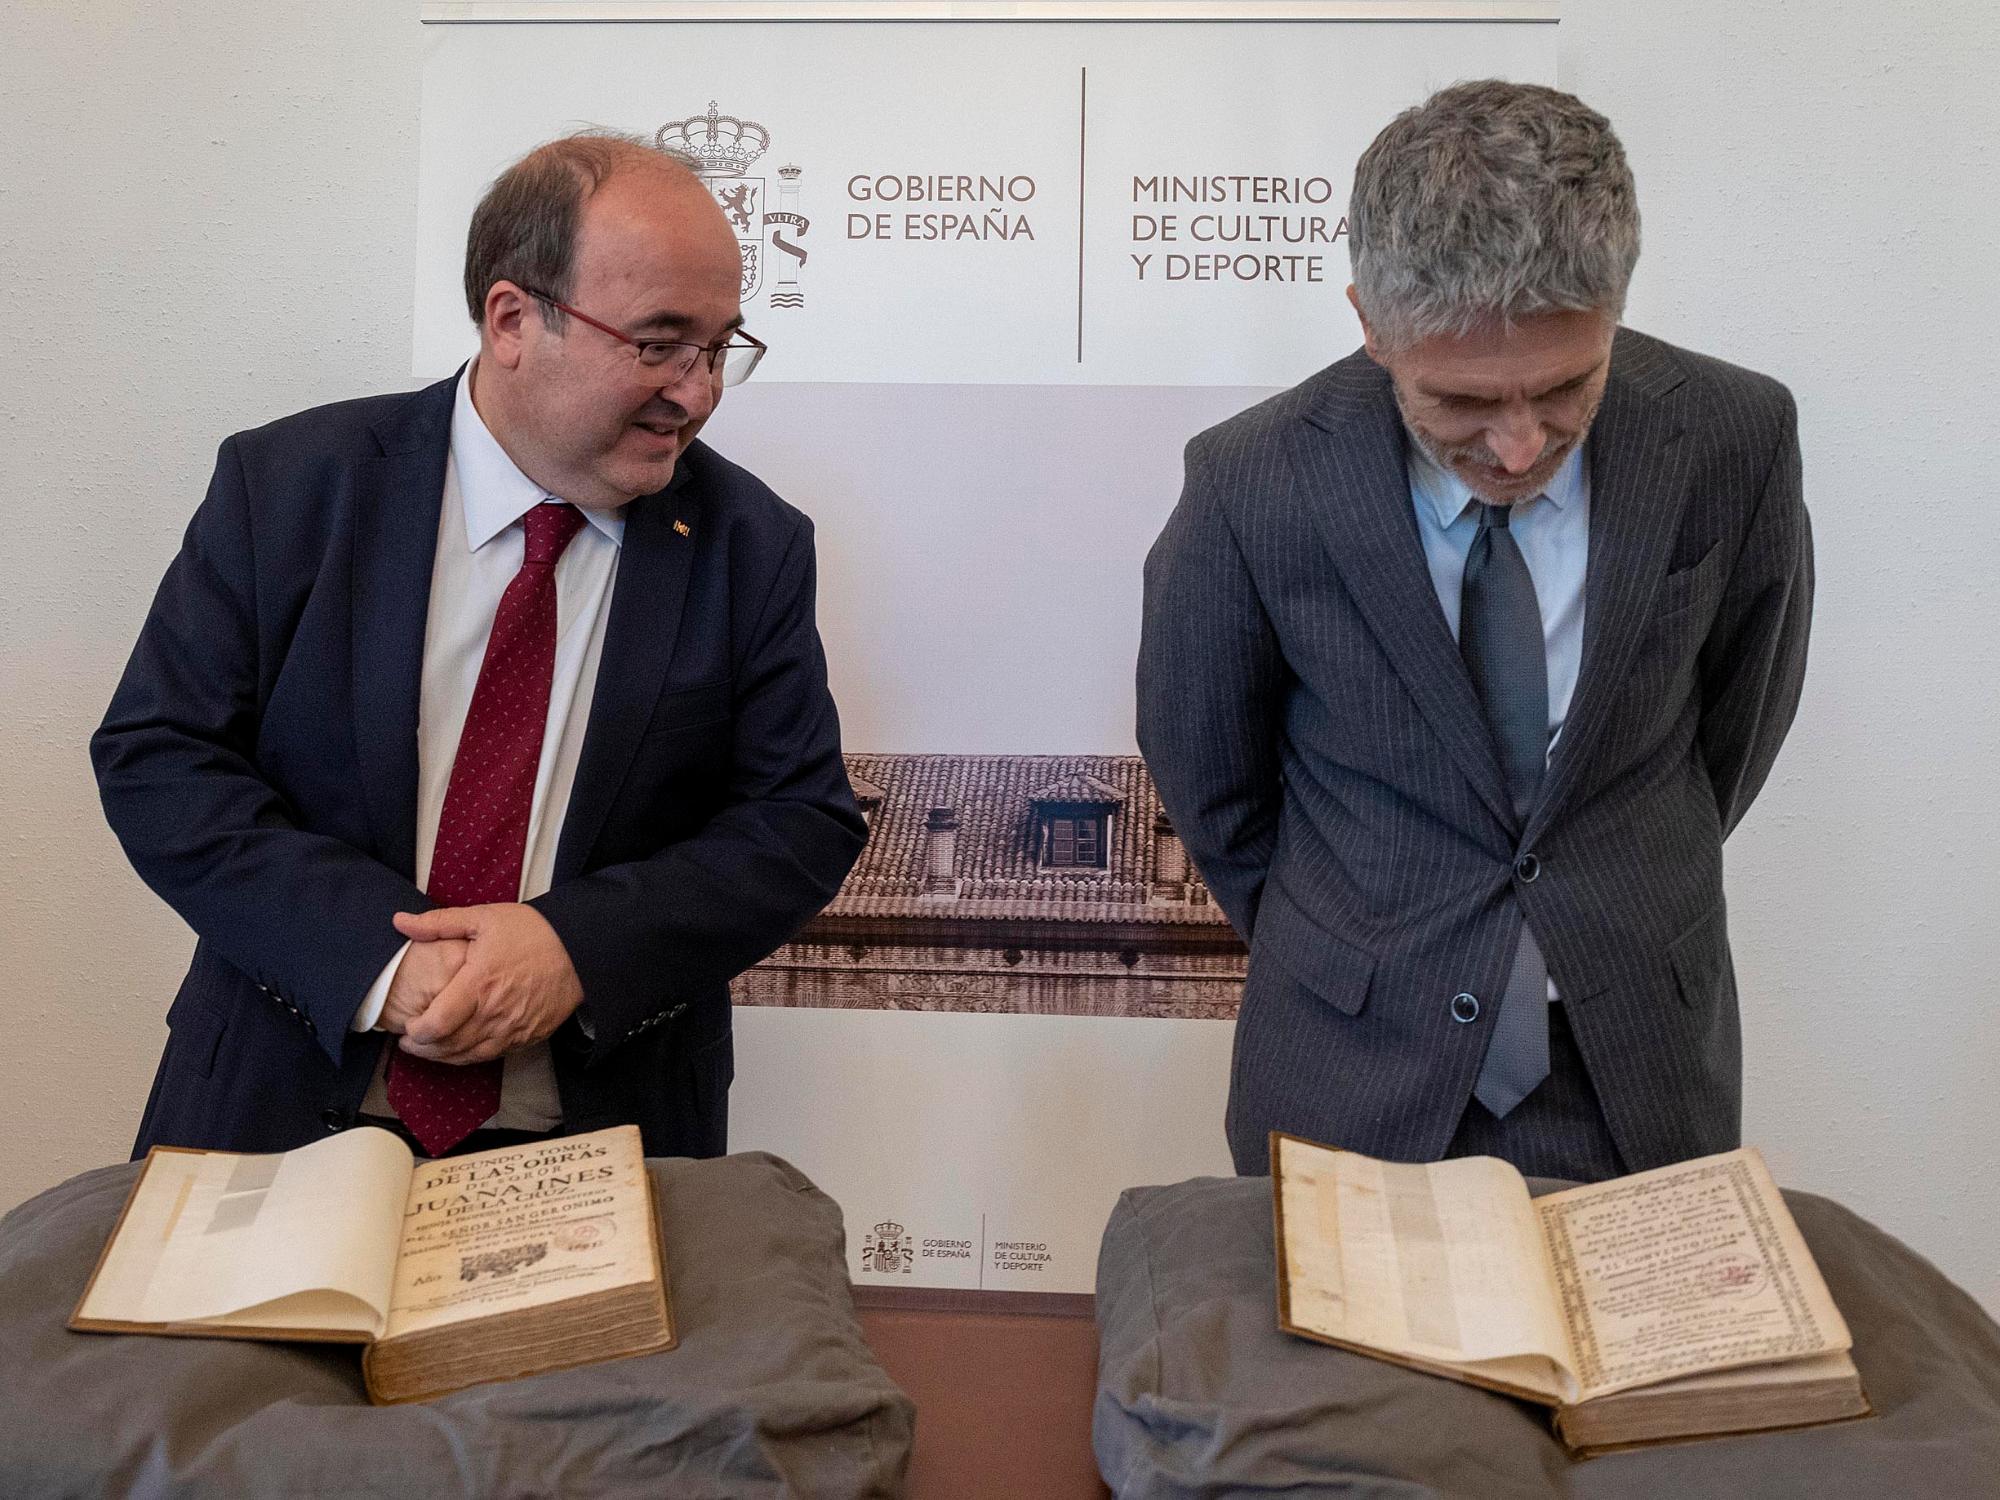 El ministro de Interior, Fernando Grande Marlaska y el ministro de Cultura, Miquel Iceta, contemplan las obras recuperadas de Sor Juana Inés de la Cruz